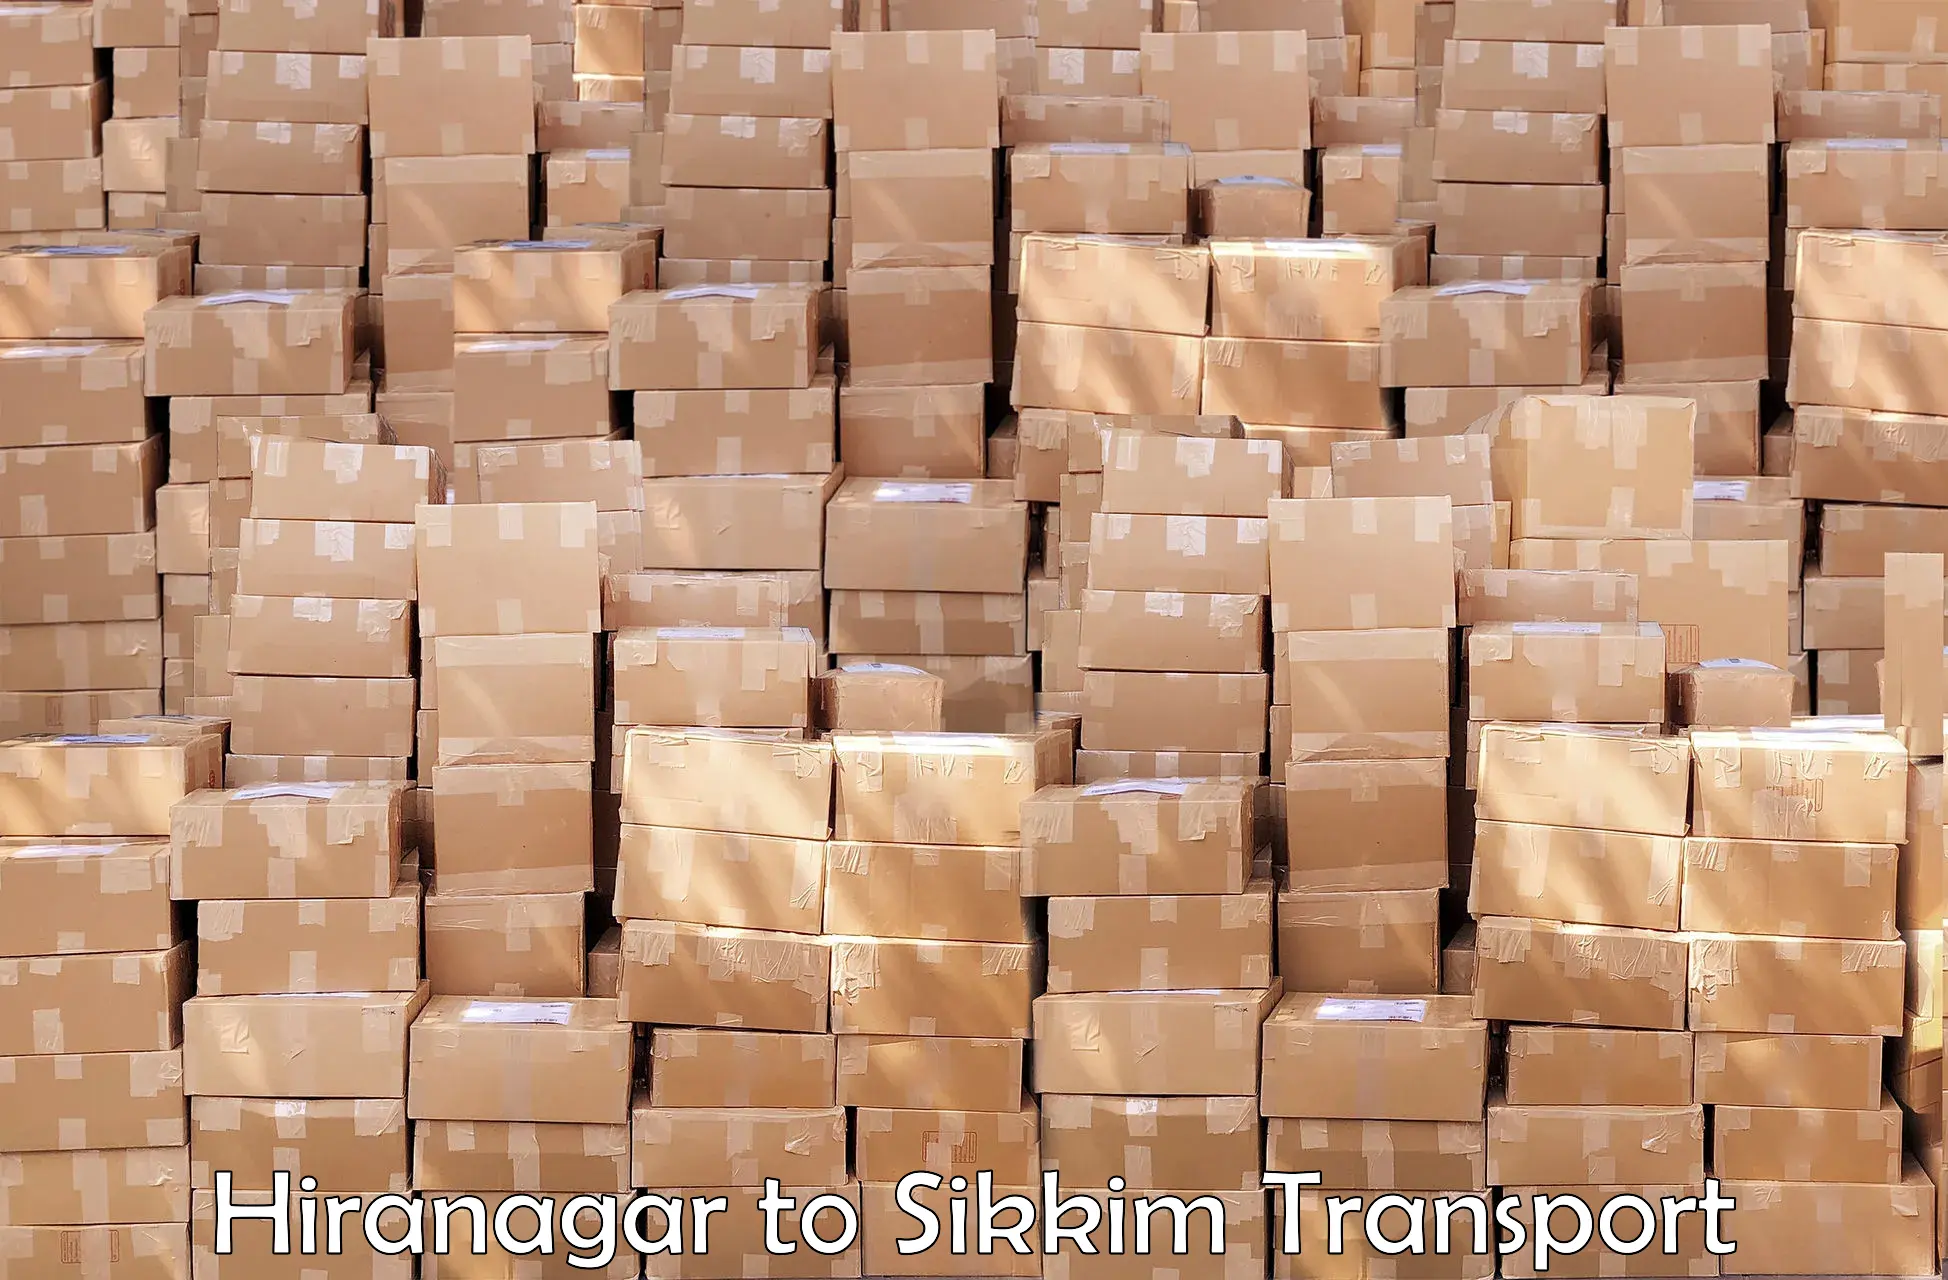 International cargo transportation services Hiranagar to Pelling